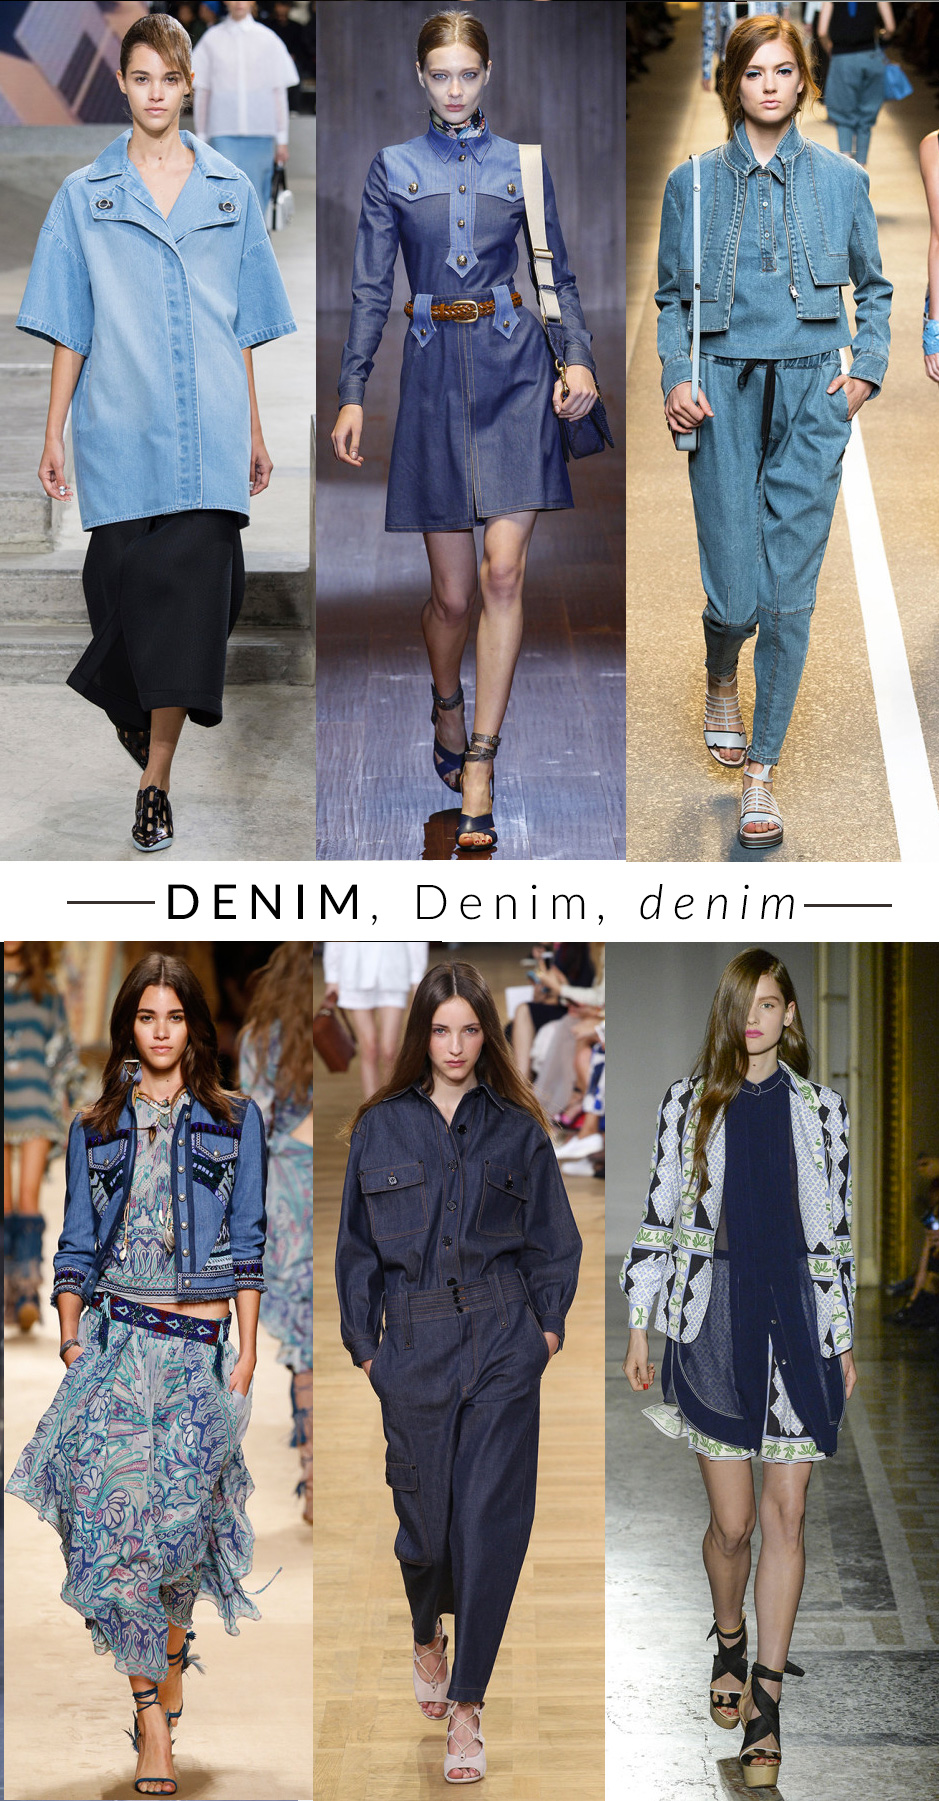 denim trend moda primavera estate 2015 fashion blogger elena schiavon 